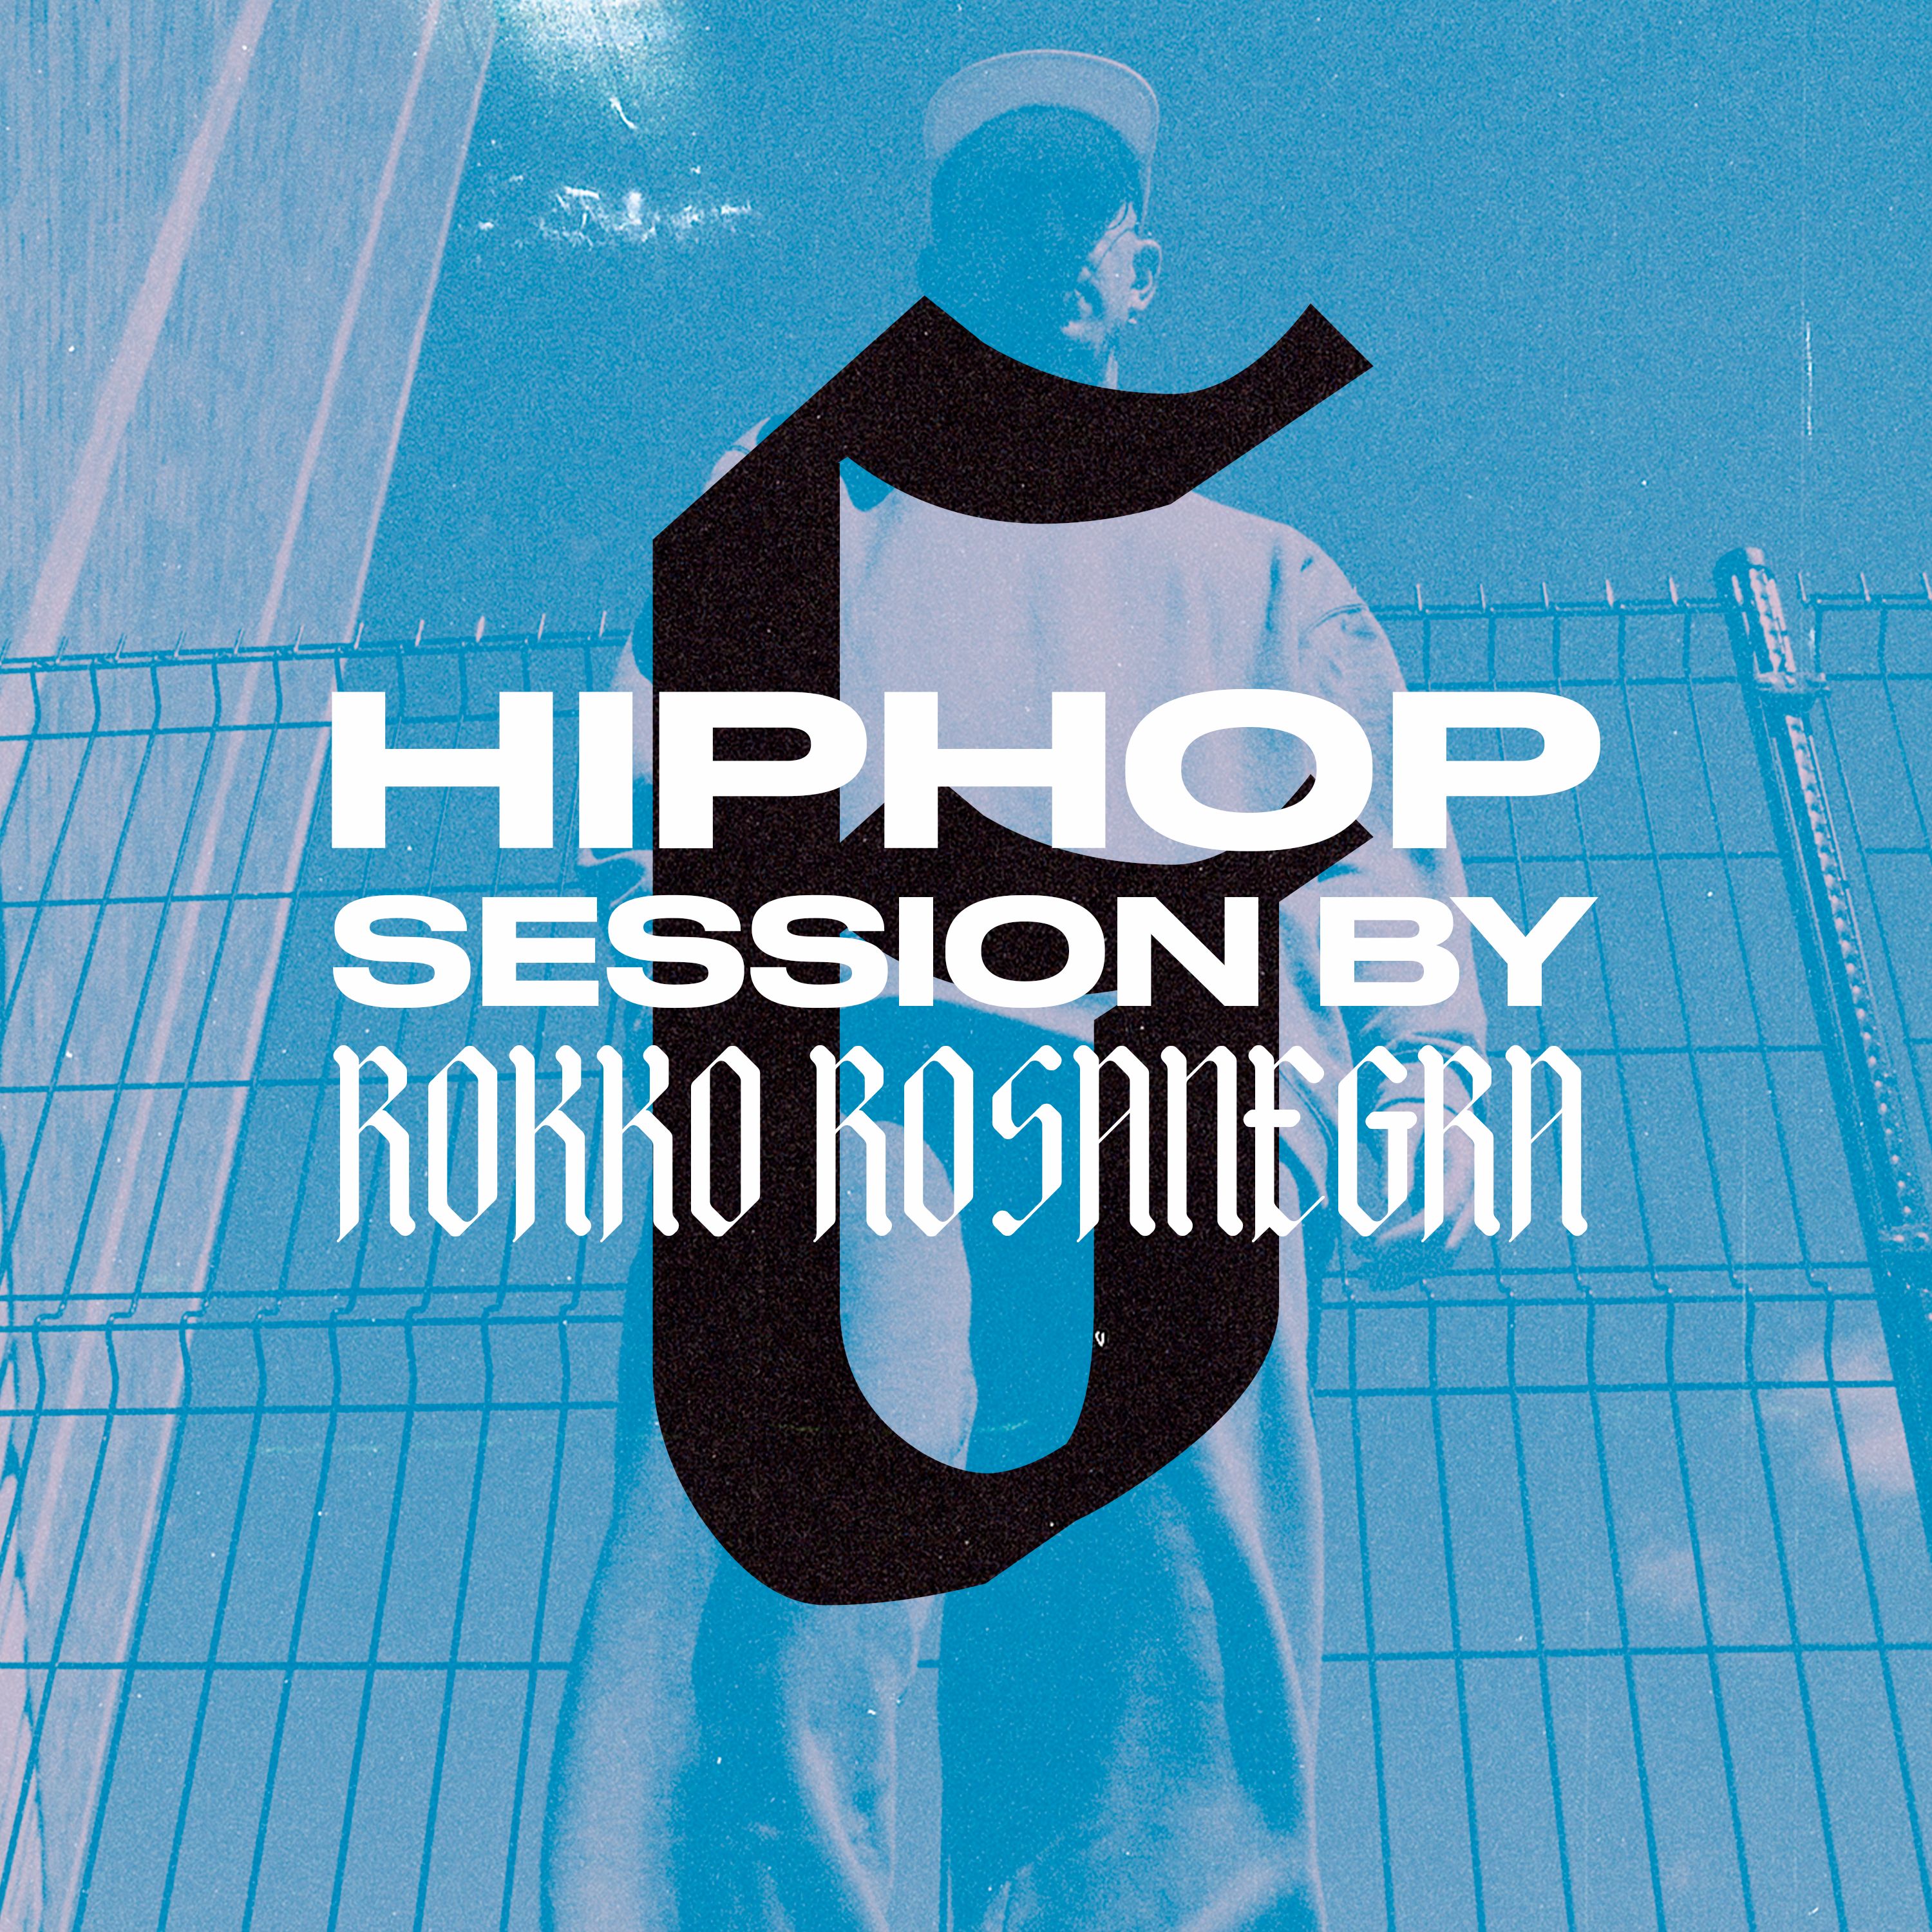 ডাউনলোড করুন HIP HOP SESSION 6 (DJ ROKKO ROSANEGRA)